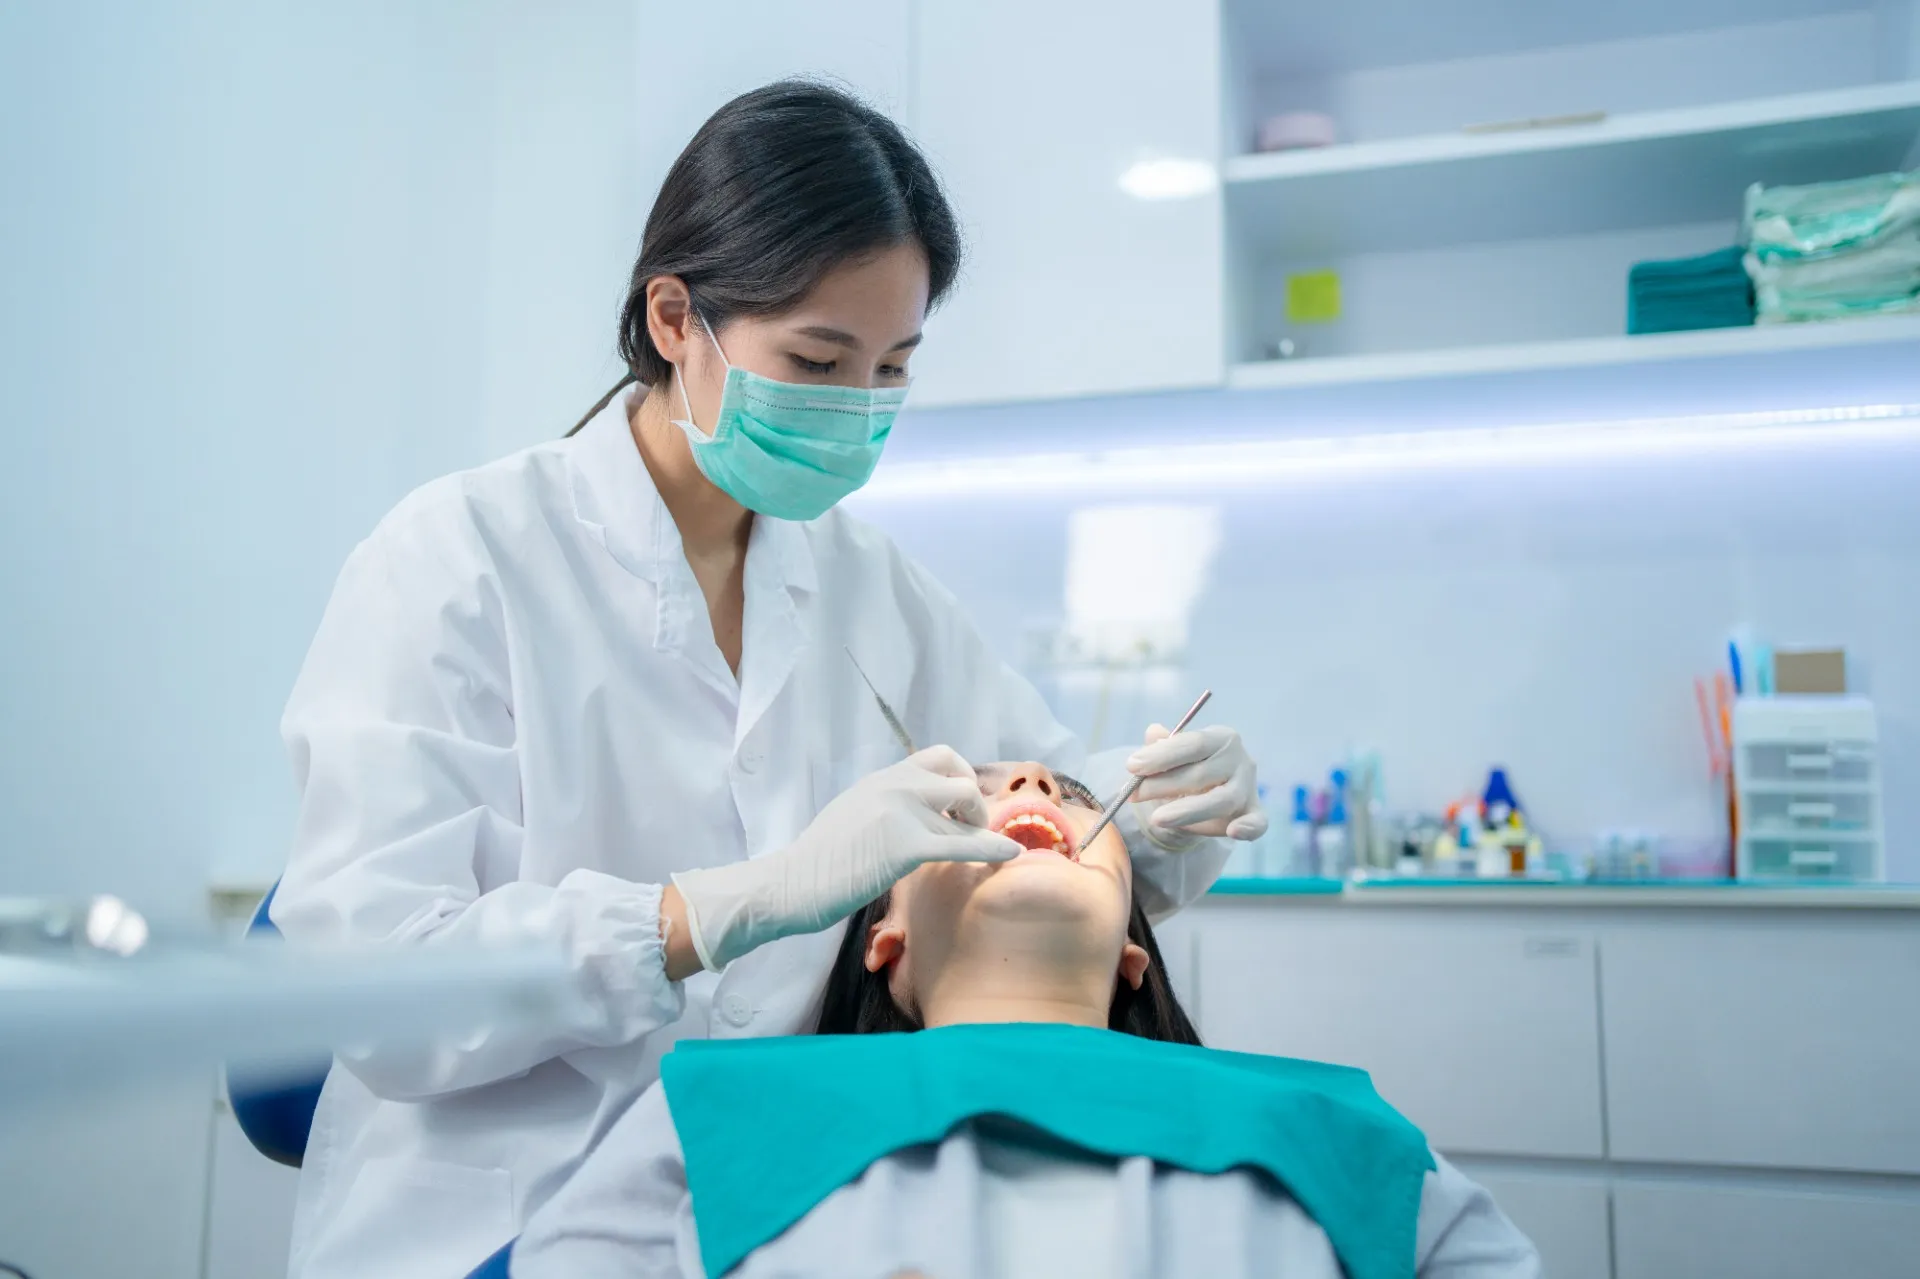 歯周病治療に使うエムドゲインについて説明する歯医者の写真